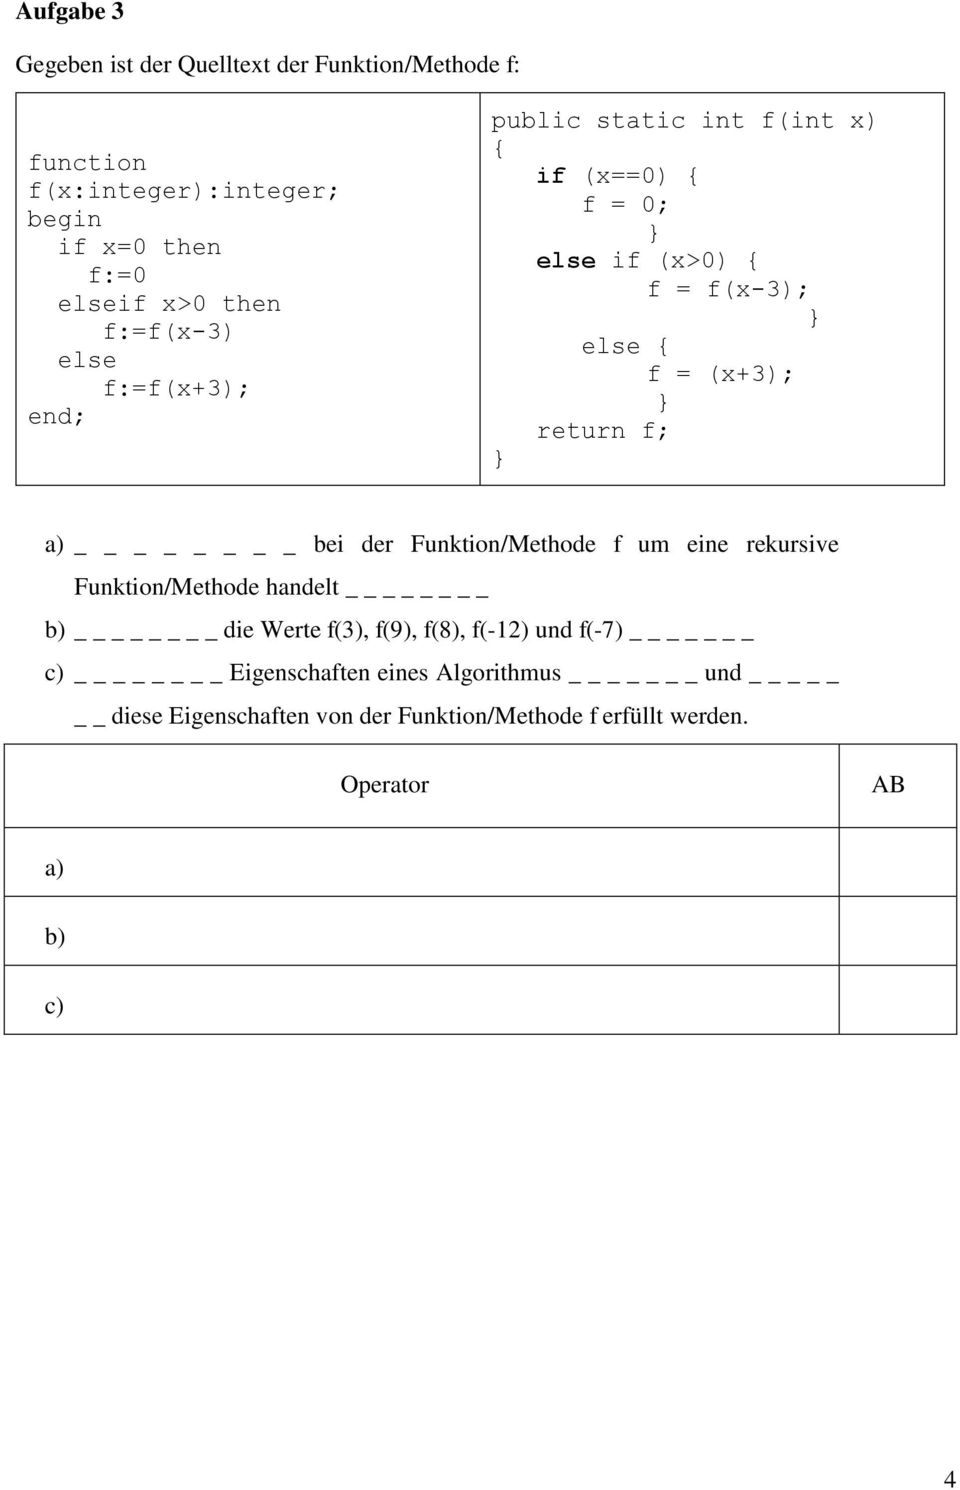 return f; } a) bei der Funktion/Methode f um eine rekursive Funktion/Methode handelt b) die Werte f(3), f(9), f(8), f(-12) und